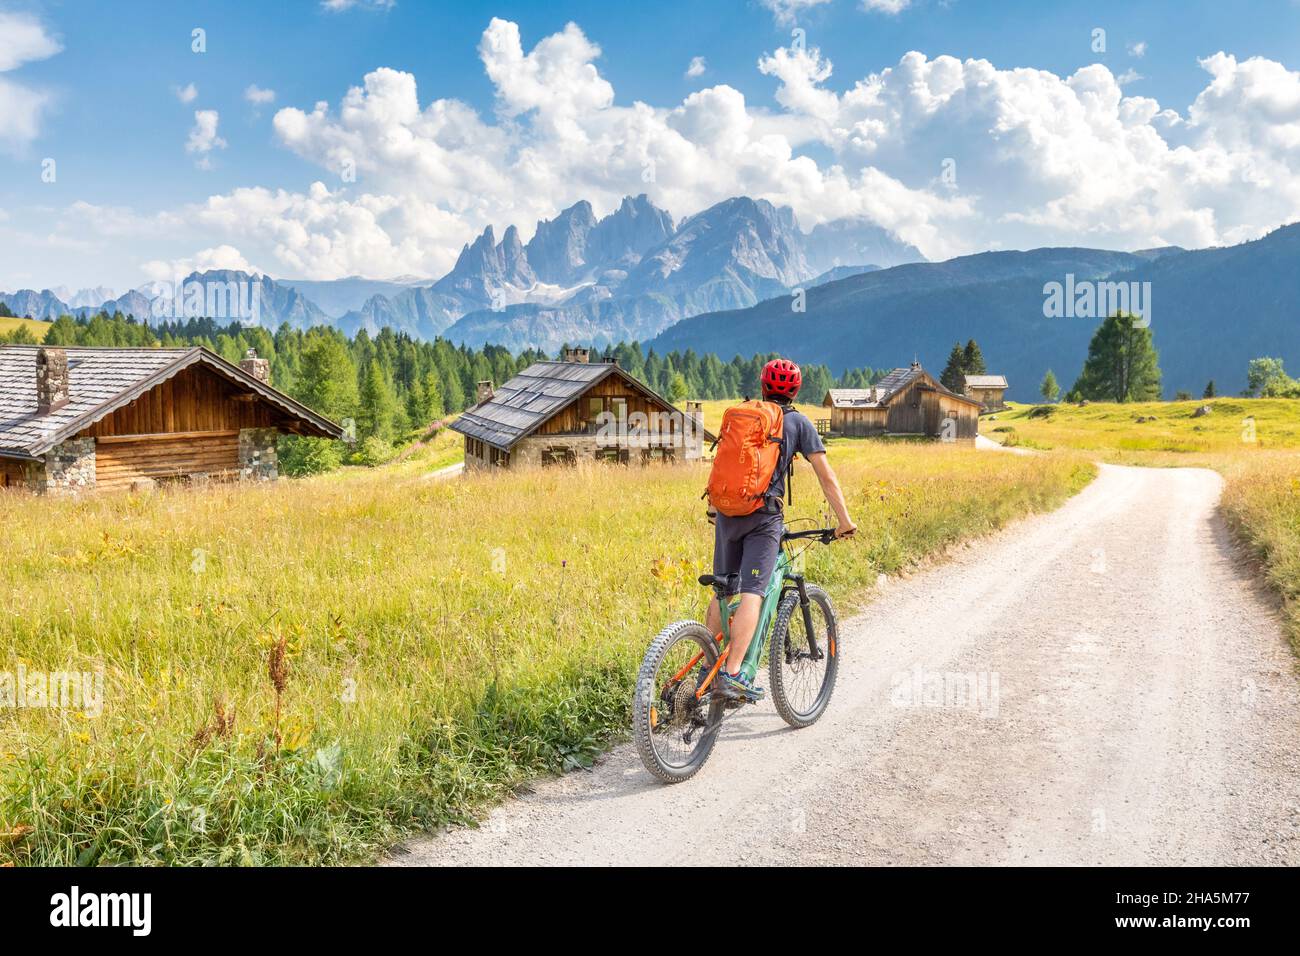 Radler auf dem E-Bike zwischen den fuciade Hütten mit dem Pale di san martino Gebirge im Hintergrund, Gemeinde soraga, trient, trentino, italien Stockfoto